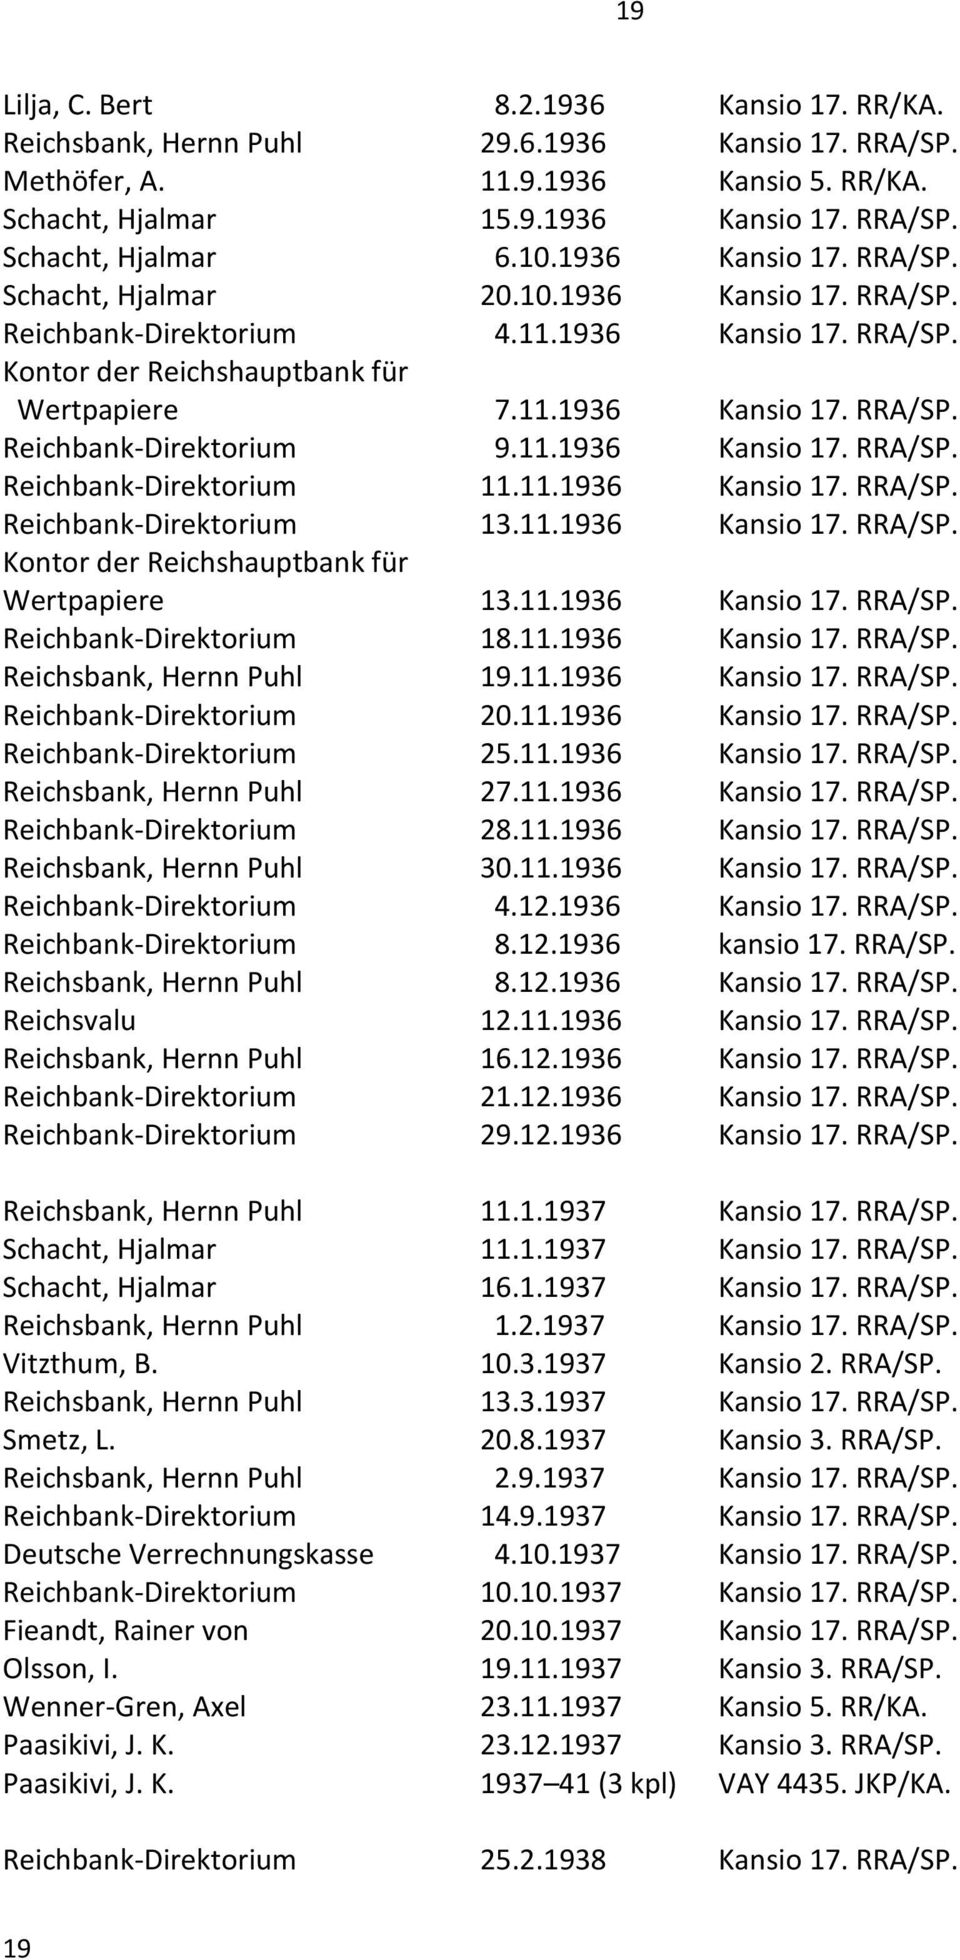 11.1936 Kansio 17. RRA/SP. Reichbank-Direktorium 11.11.1936 Kansio 17. RRA/SP. Reichbank-Direktorium 13.11.1936 Kansio 17. RRA/SP. Kontor der Reichshauptbank für Wertpapiere 13.11.1936 Kansio 17. RRA/SP. Reichbank-Direktorium 18.